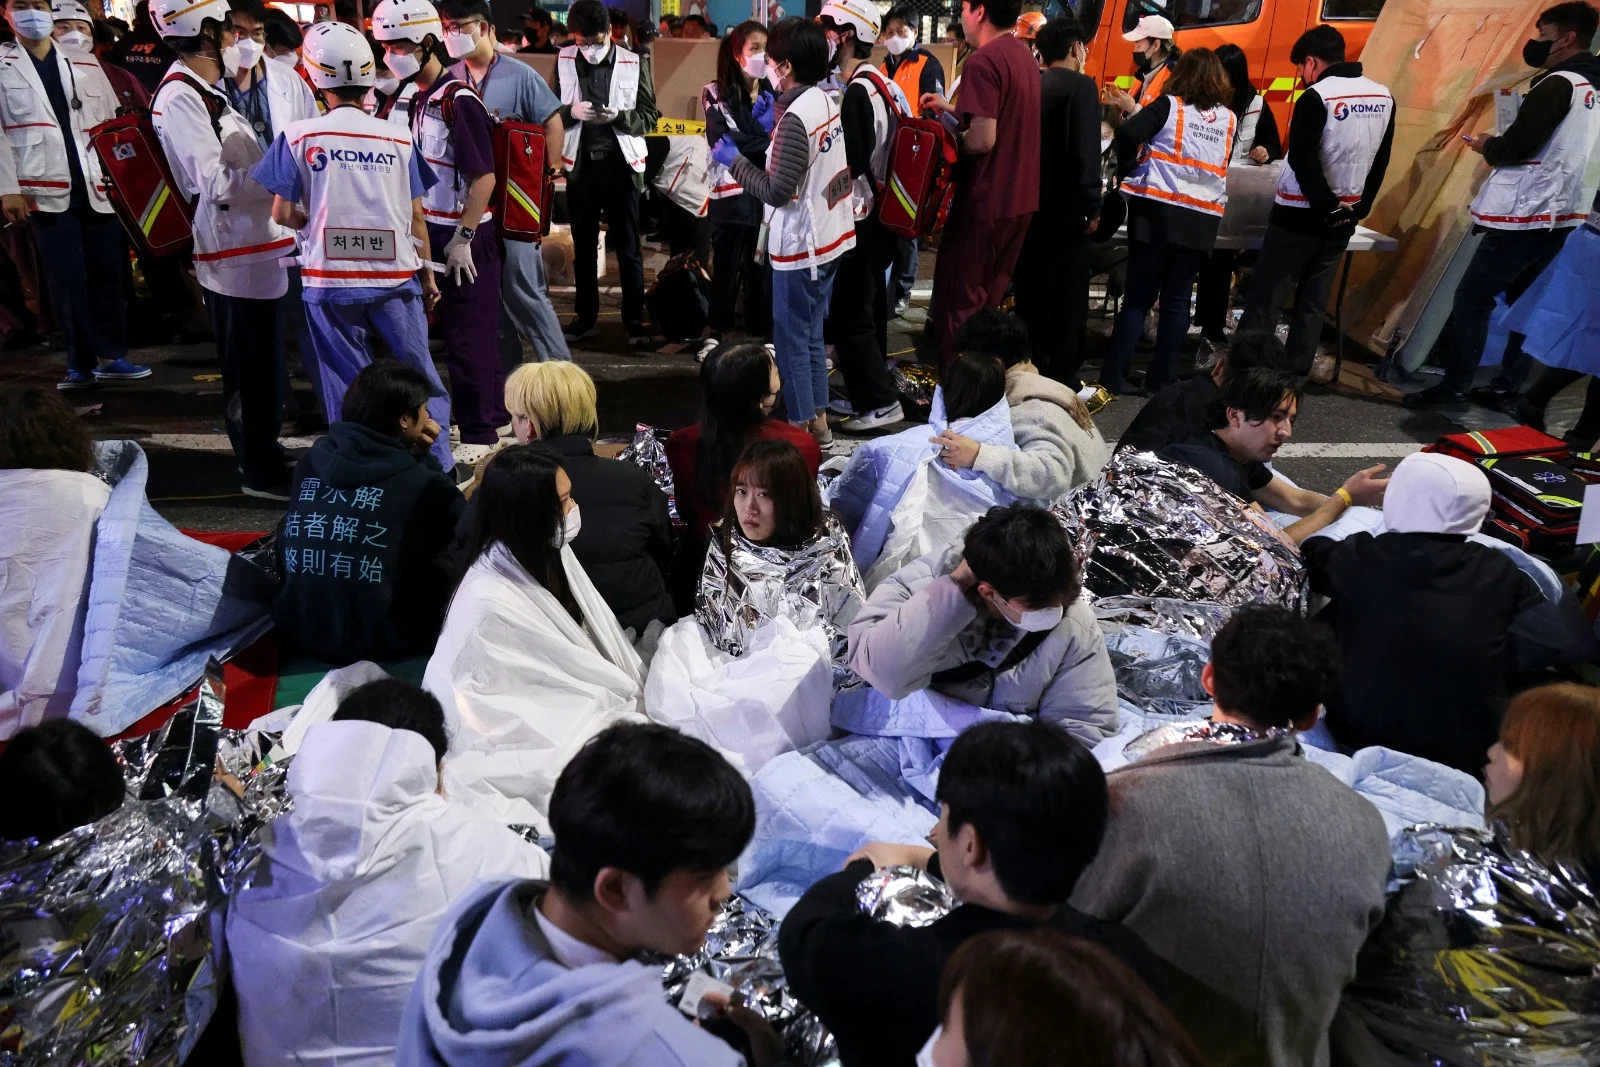 עשרות הרוגים ברחובות סיאול שבדרום קוריאה